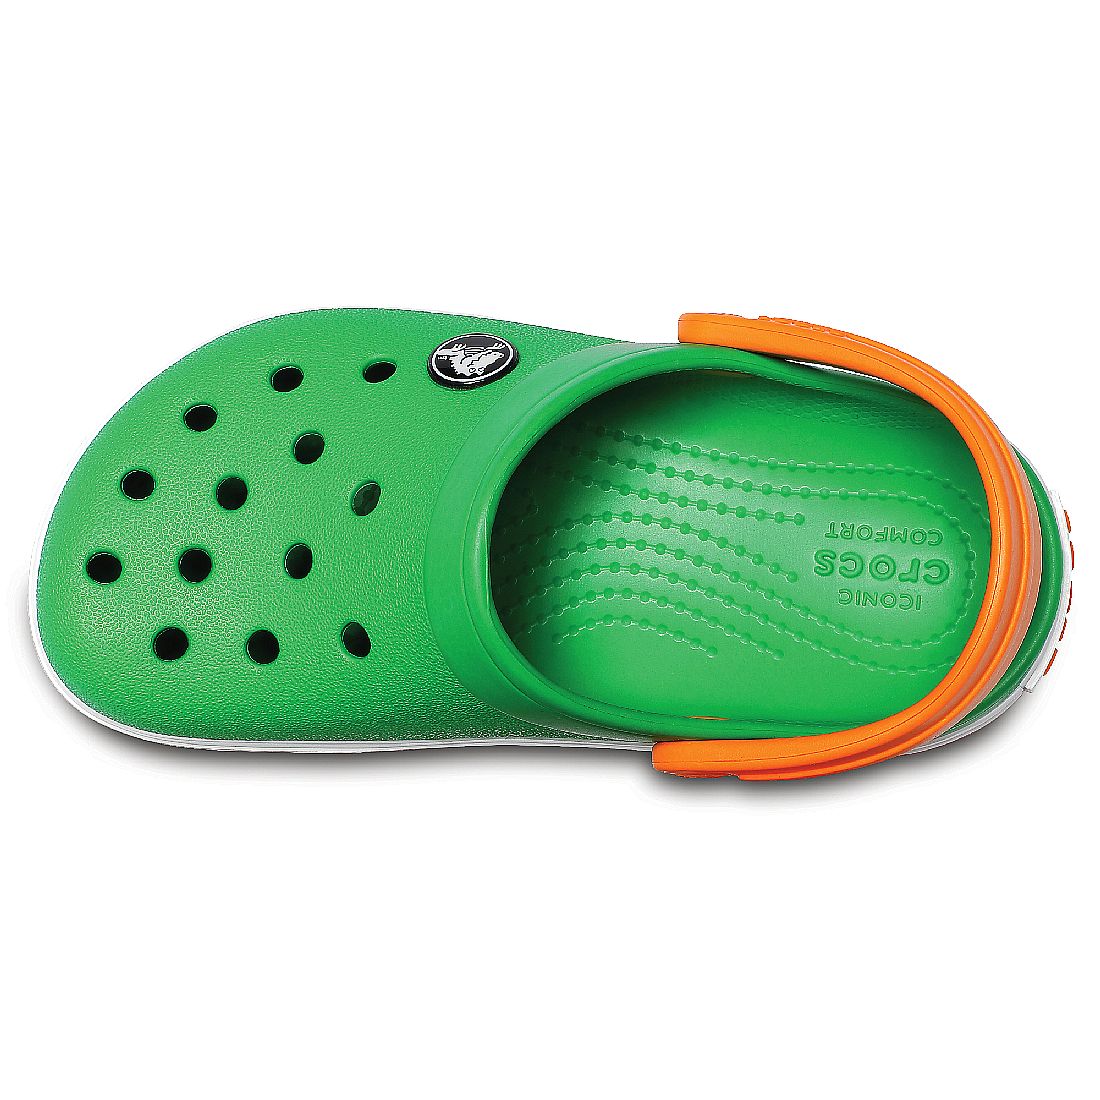 Crocs Crocband Clog K Kinder Junior Clog relaxed fit 204537